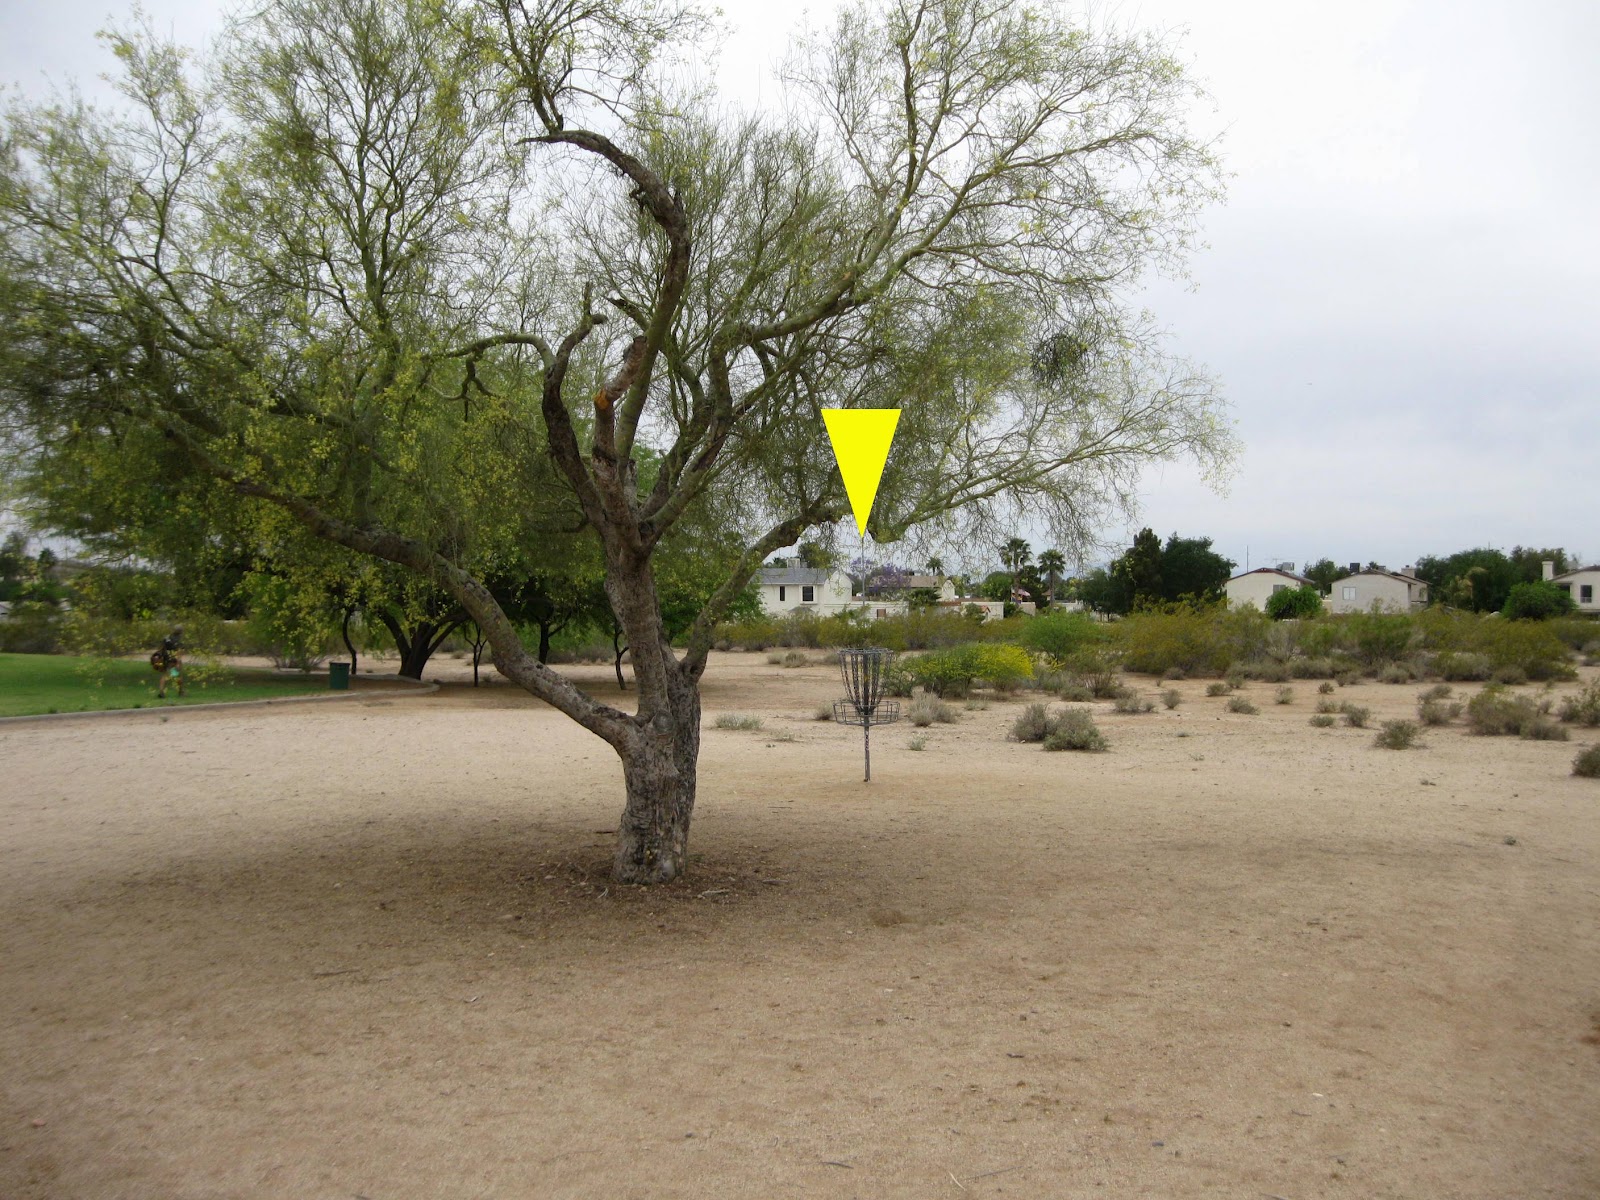 Emerald Park In Mesa Az Disc Golf Course Re Auto Design Tech